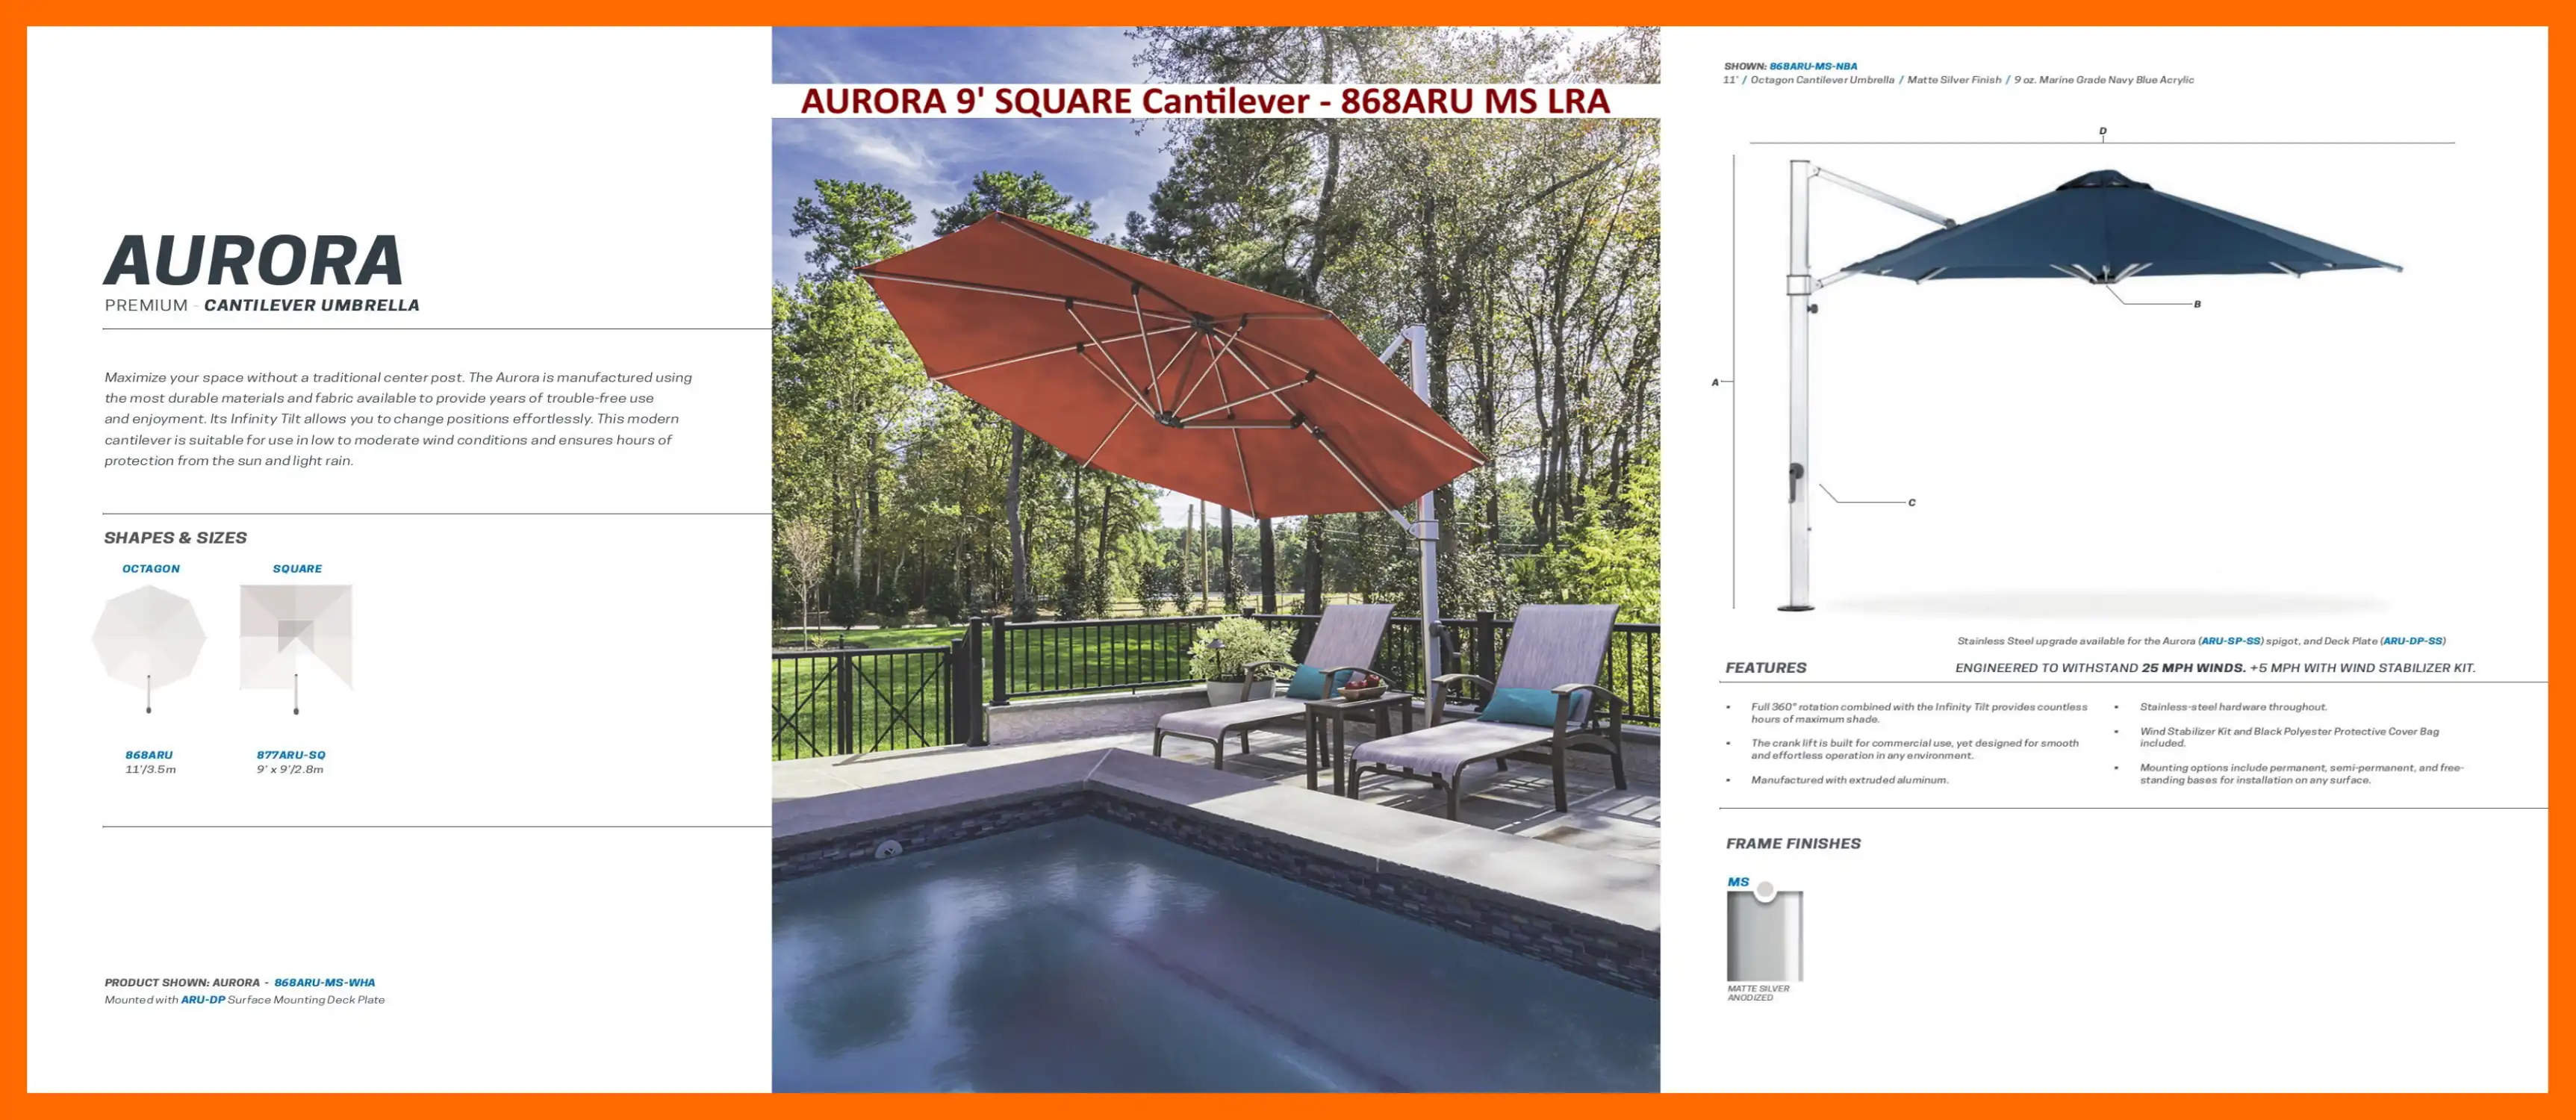 AURORA Premium Cantilever Umbrella